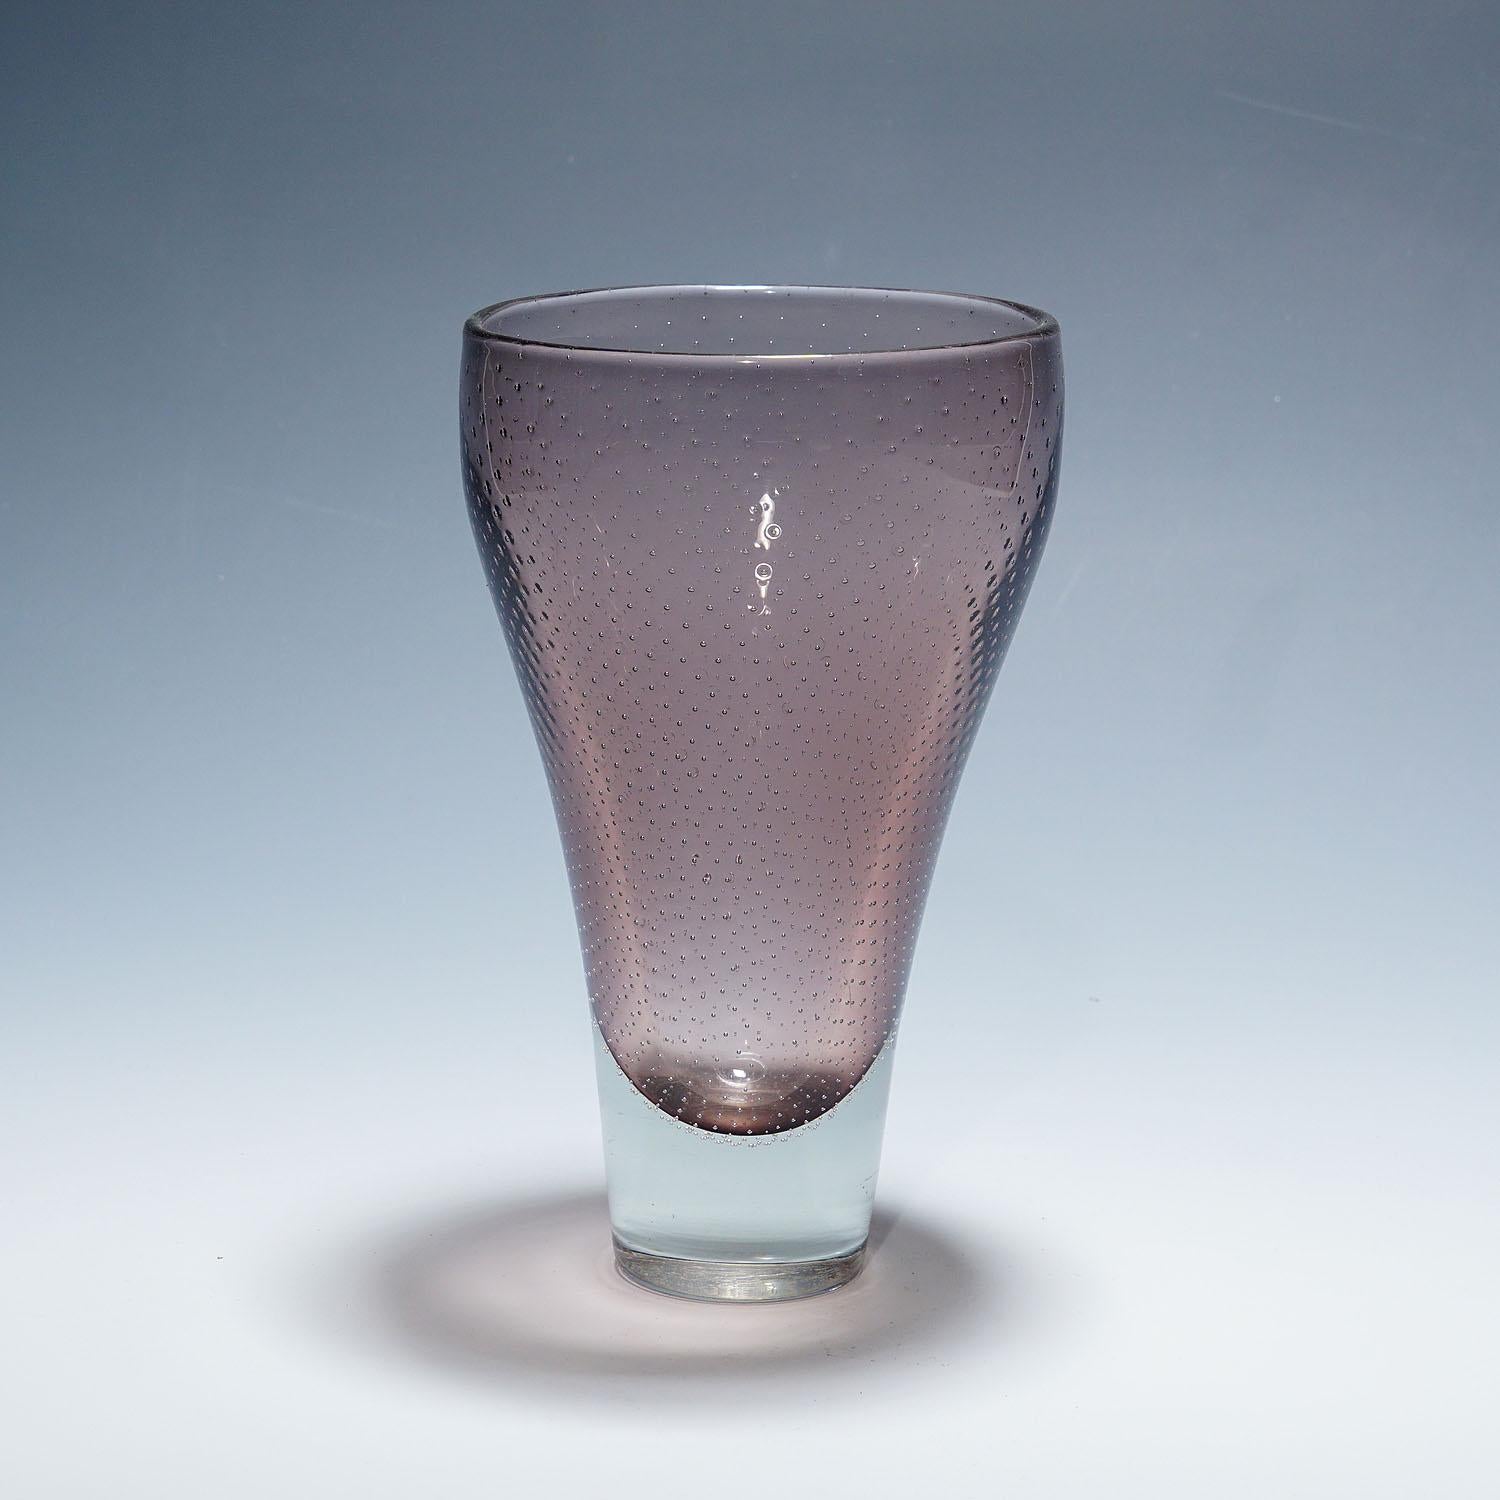 Vase aus Kunstglas von Gunnel Nyman für Nuutajarvi Notsio

Eine finnische Kunstglasvase, entworfen von Gunnel Nyman in den späten 1940er Jahren und hergestellt von Nuutajarvi Notsjo in den 1950er Jahren. Klares und lilafarbenes Glas, verziert mit